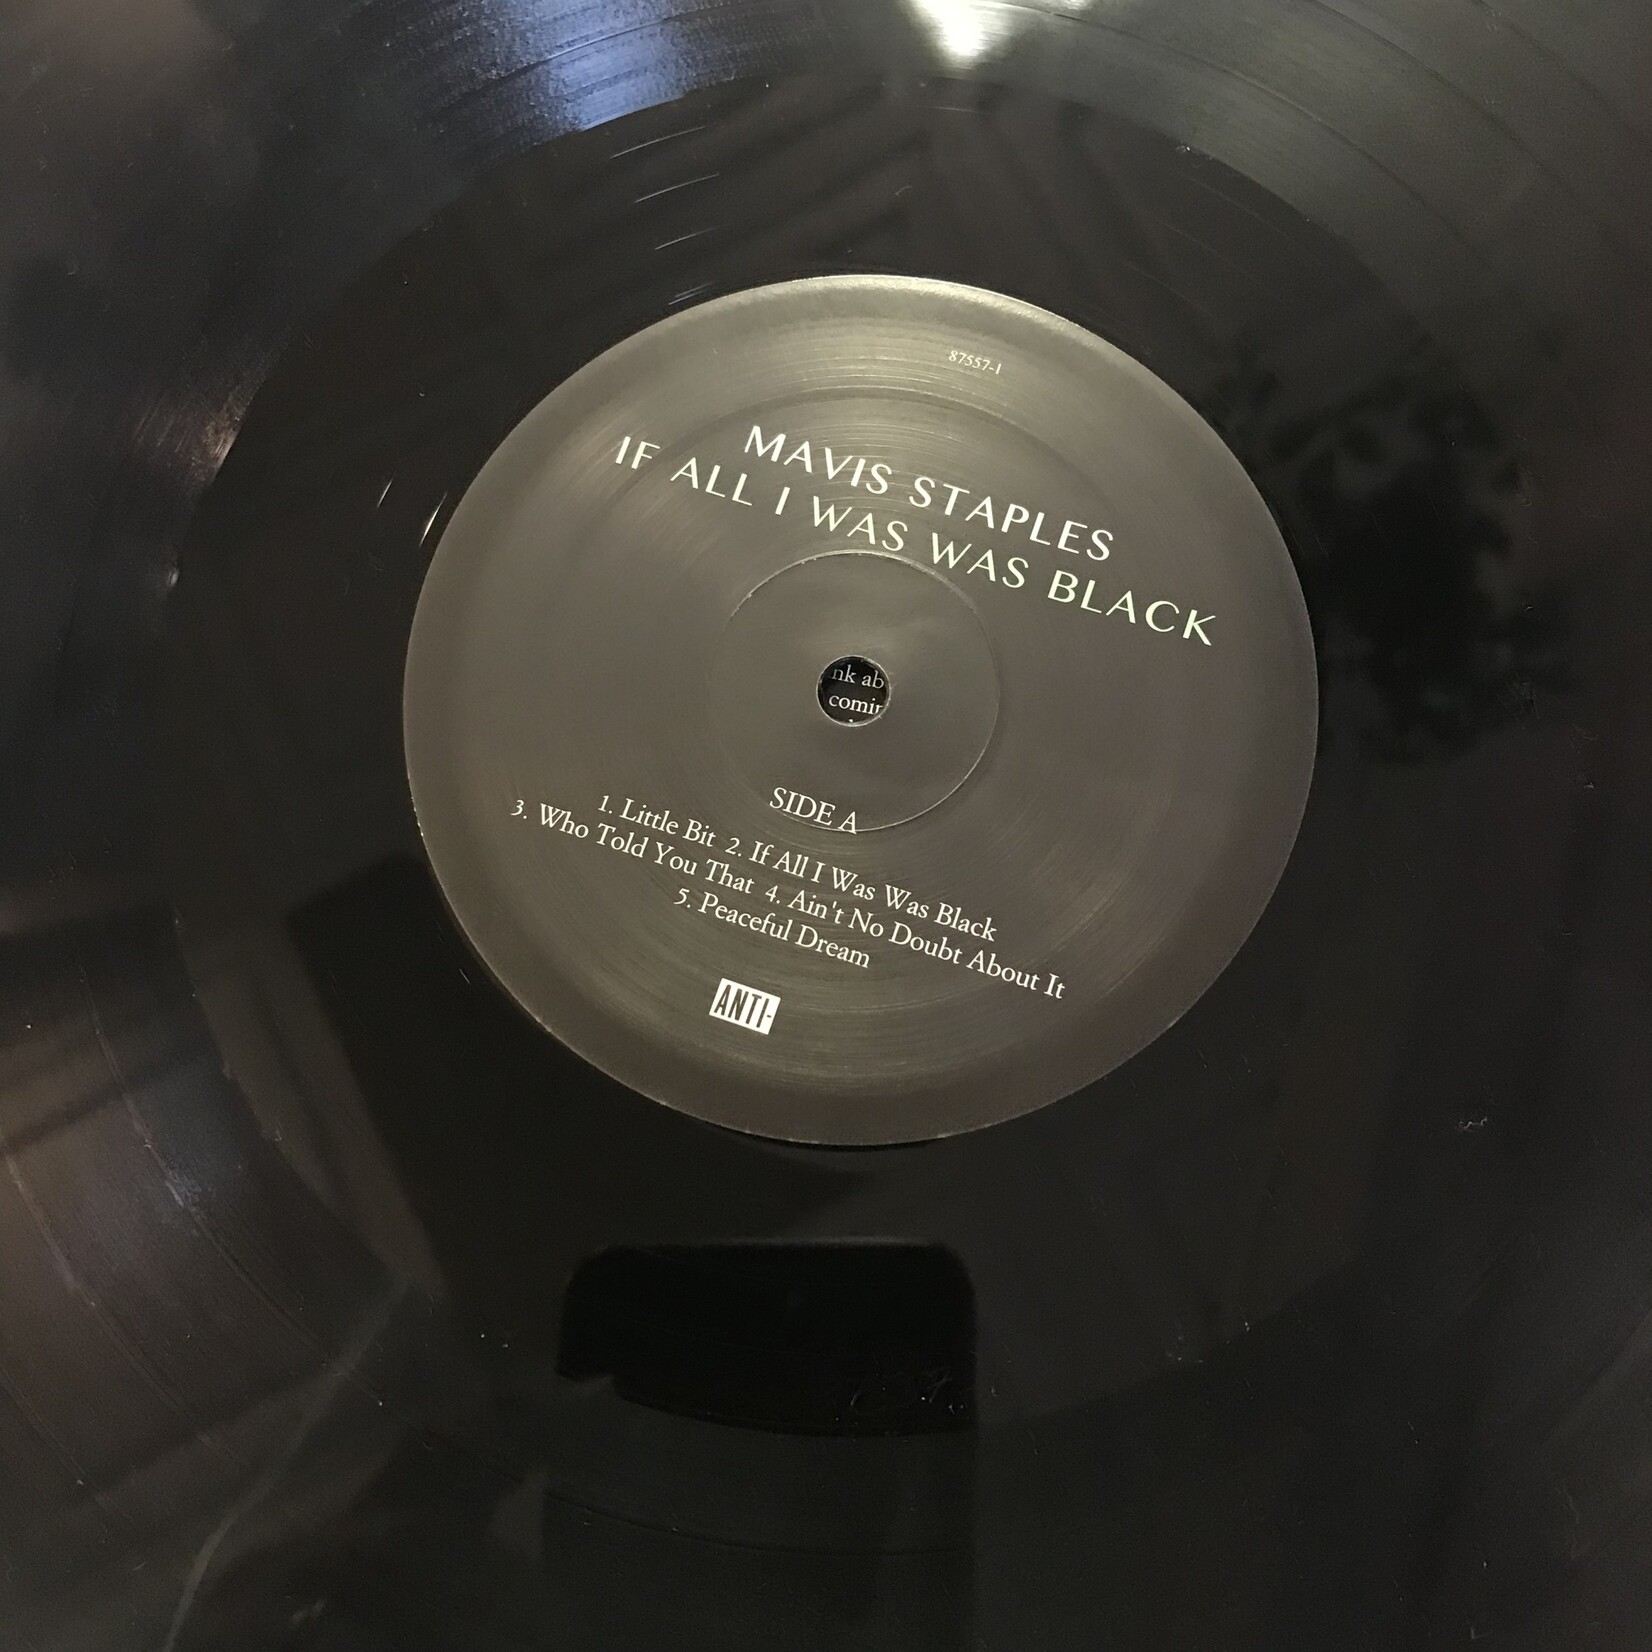 Mavis Staples - If All I Was Was Black - 87557 1 - Vinyl LP (USED)